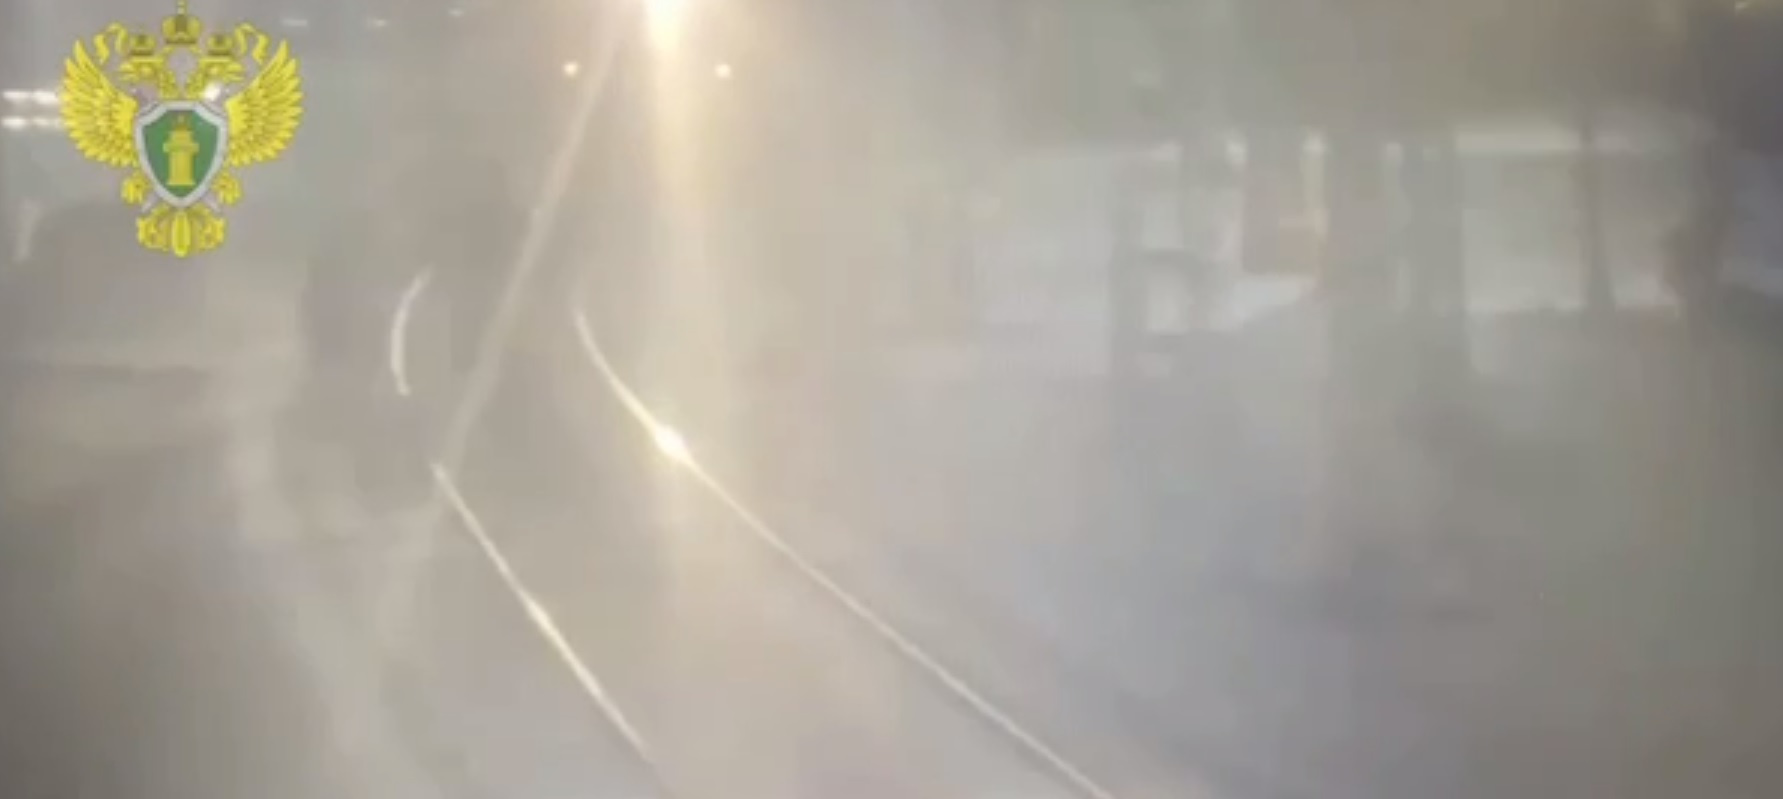 Гибель трёх человек под поездом на станции «Рижская» попала на видео